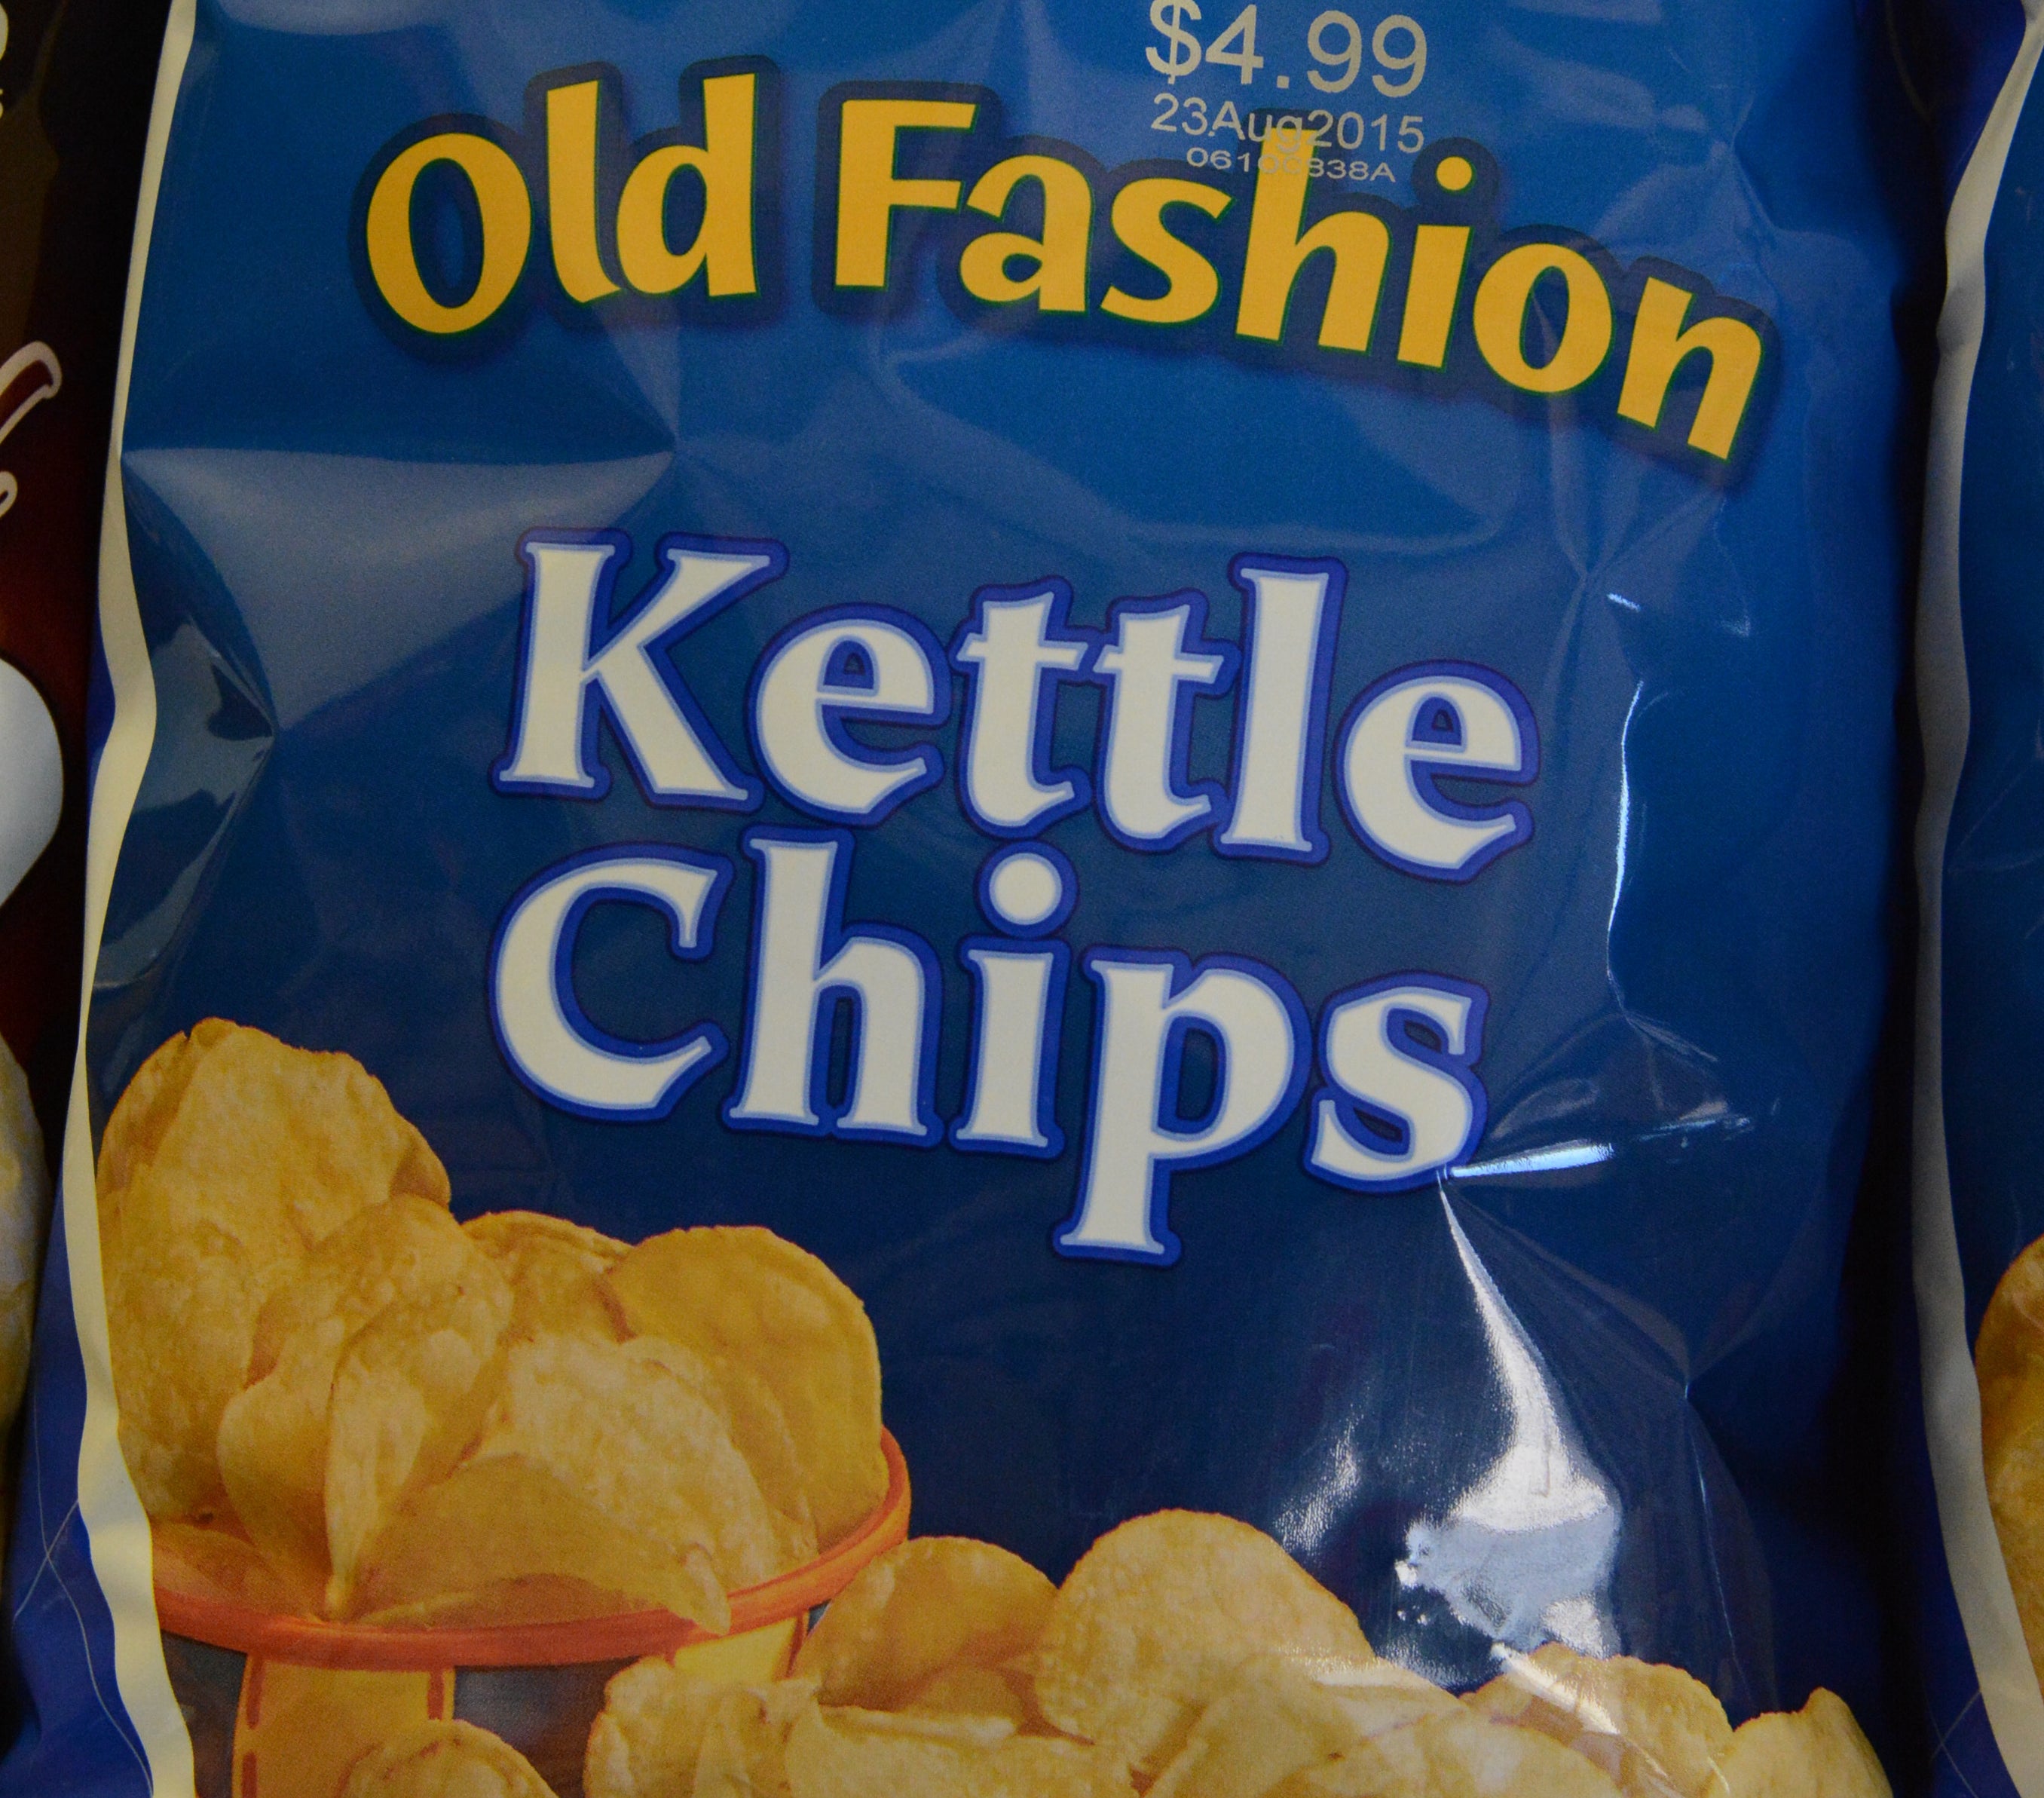 Bag of kettle chips